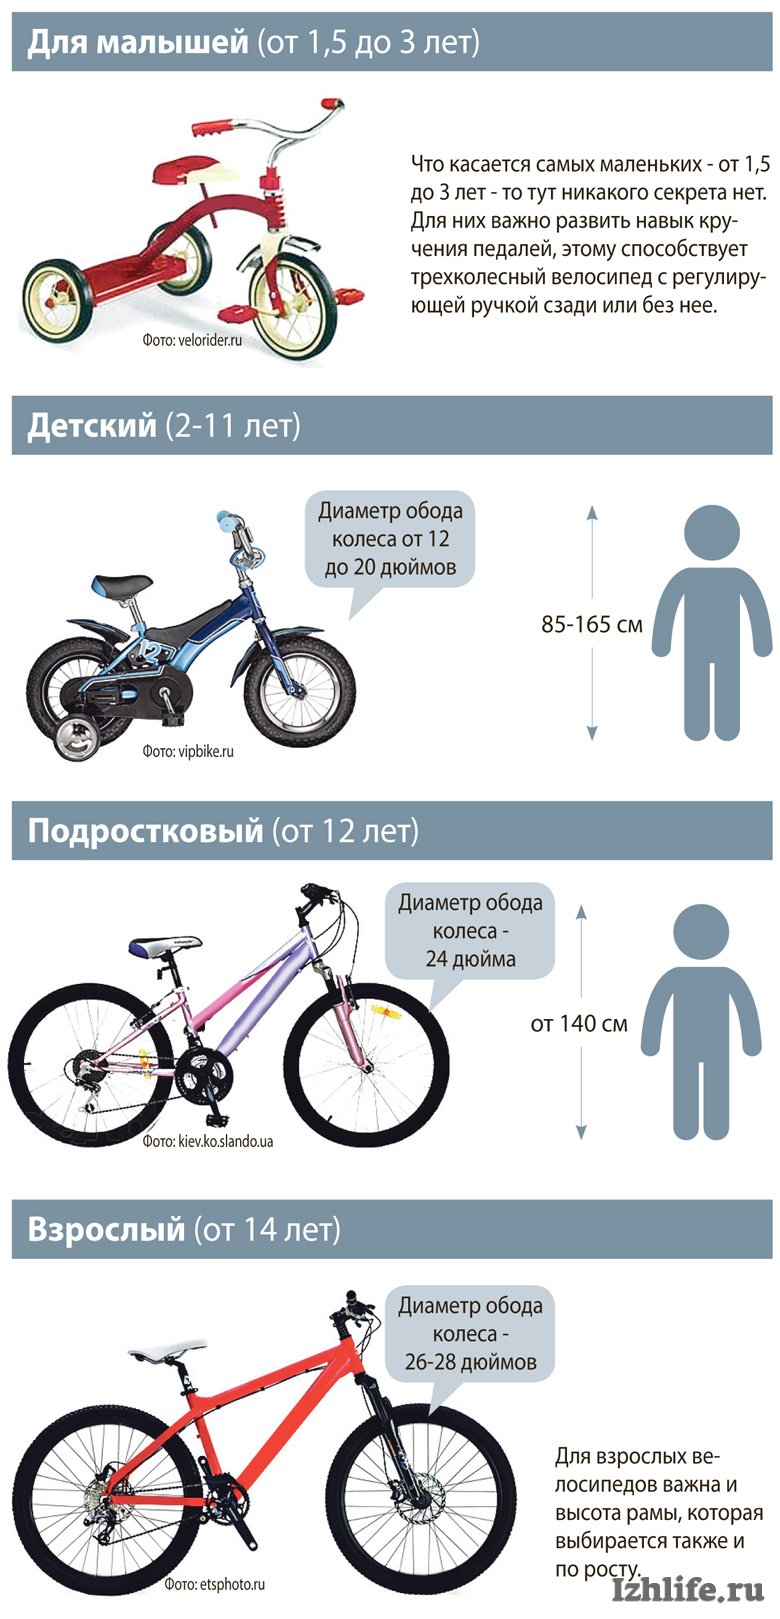 20 дюймов на какой возраст. Размер колес детского велосипеда по росту. Как выбрать велосипед для ребенка 4 года по росту и весу таблица. Таблица подбора велосипеда по росту ребенка рамы. Как выбрать раму для велосипеда по росту таблица.